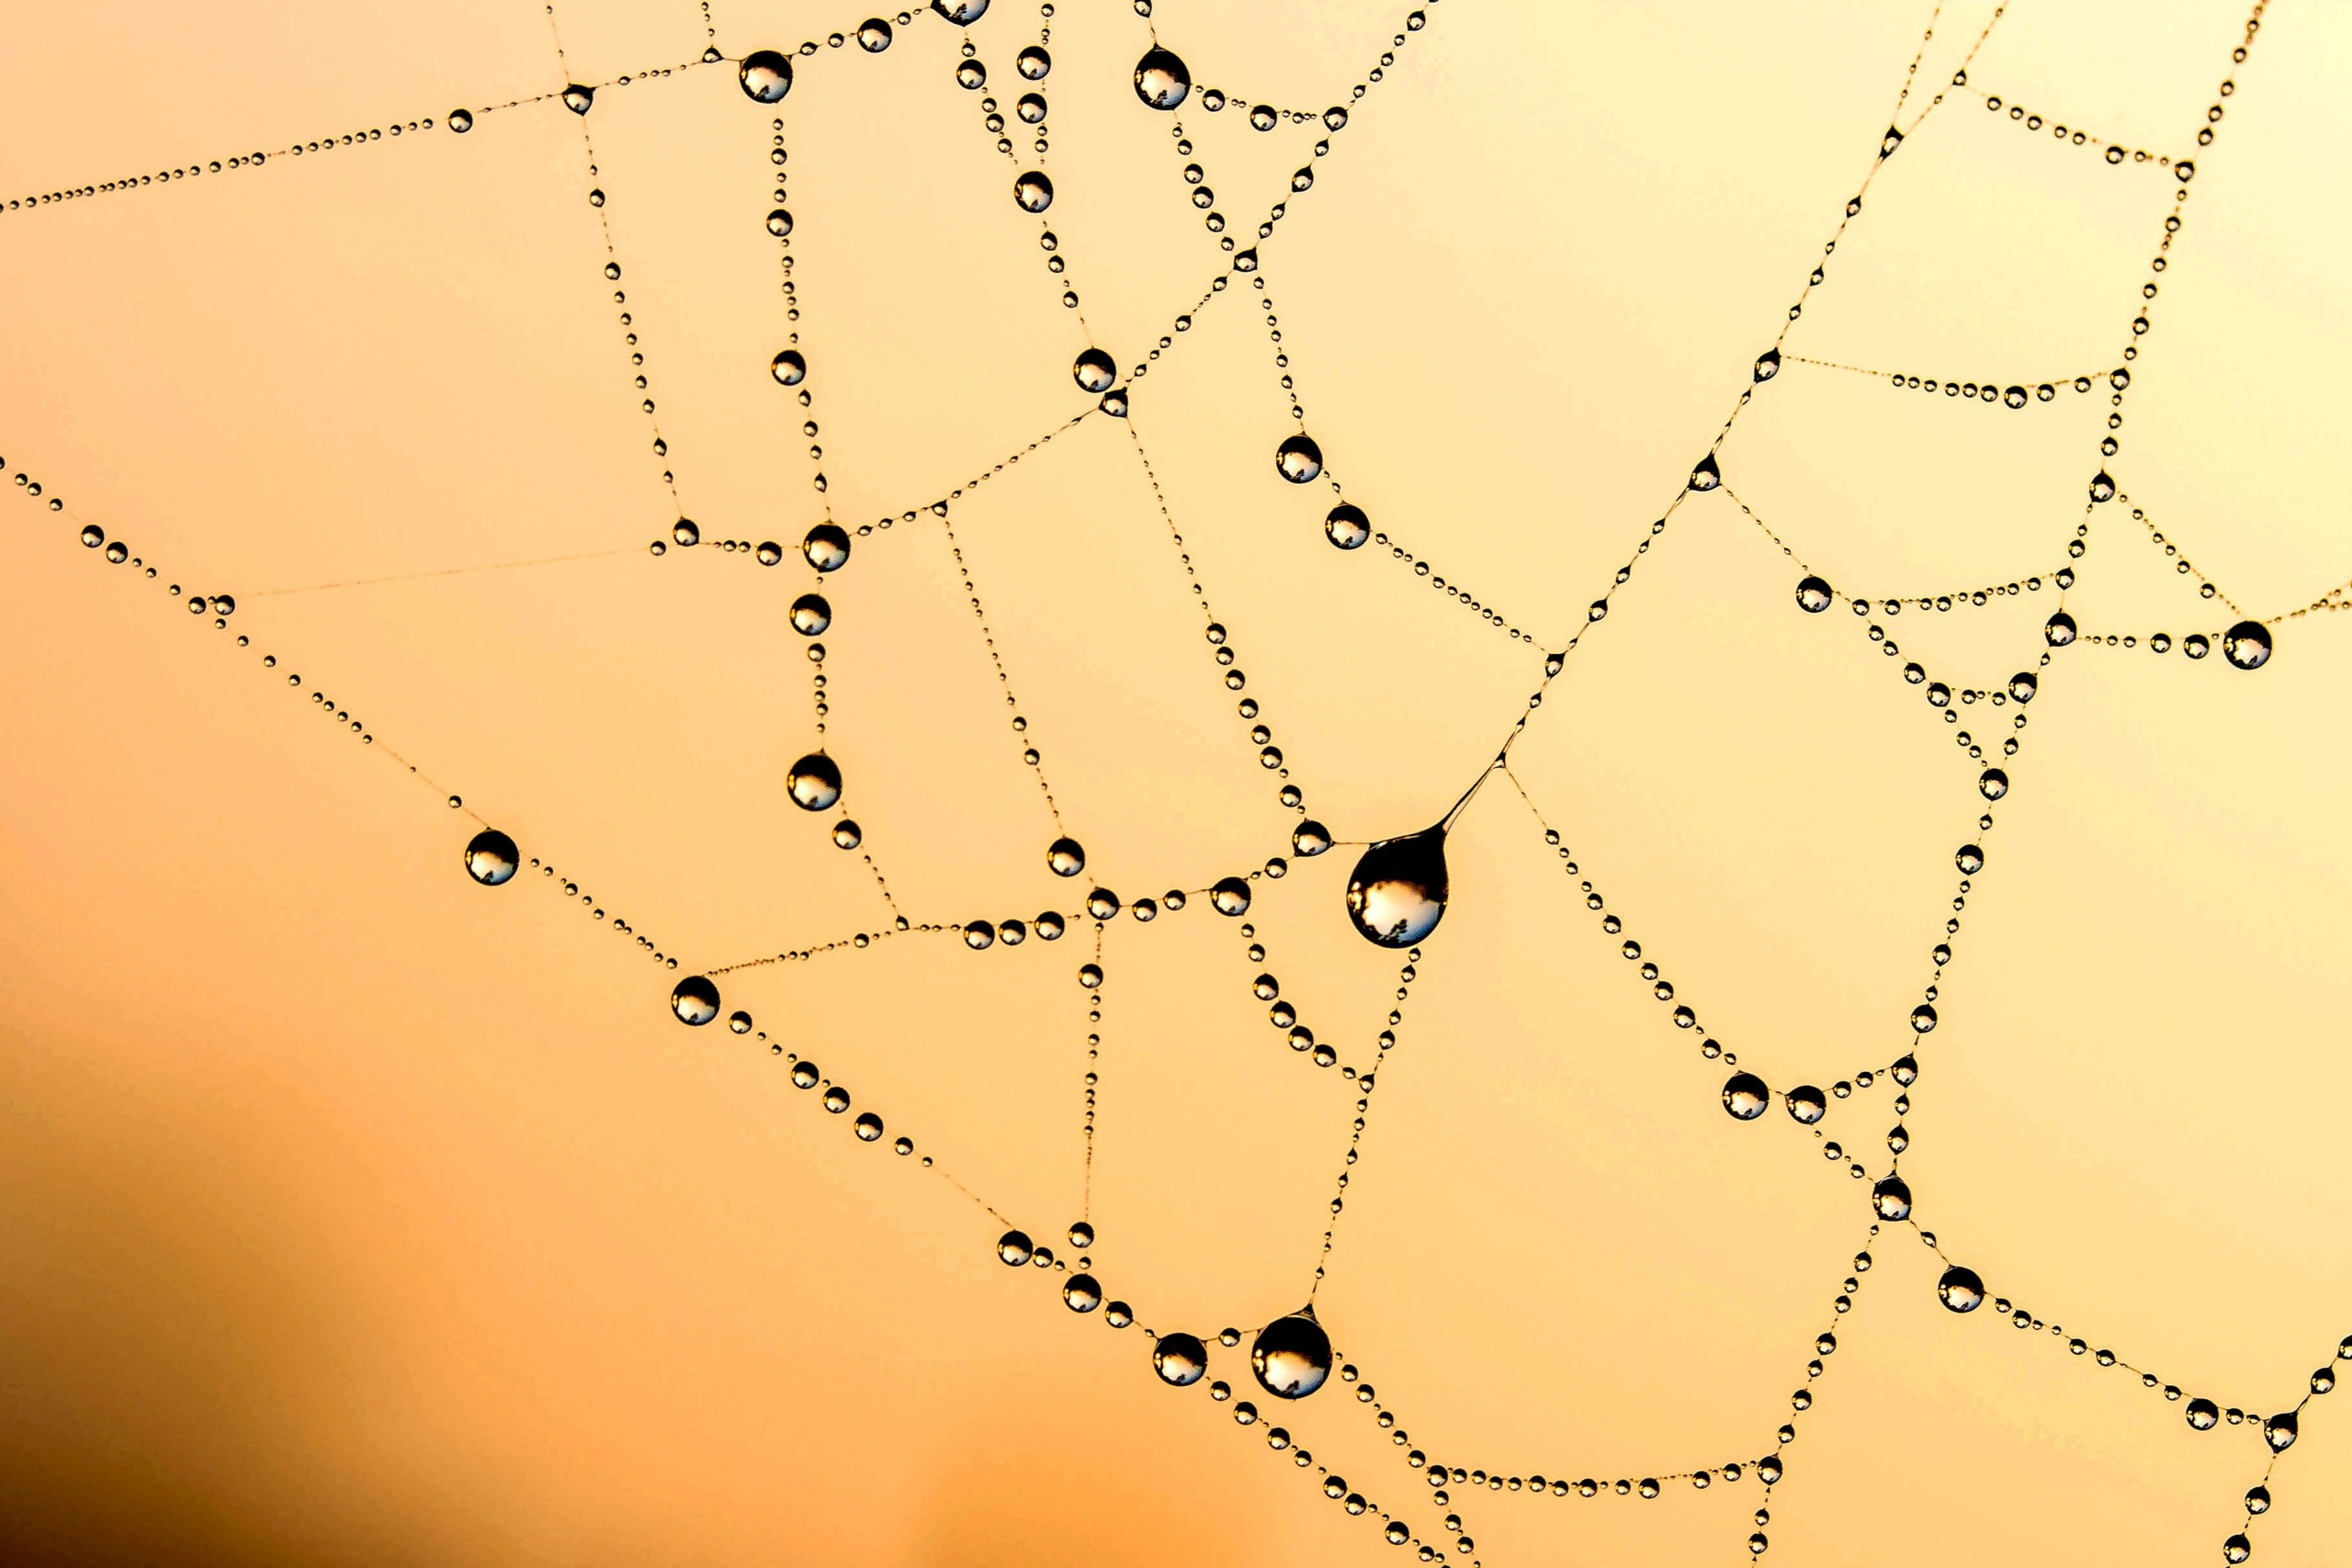 Märkä hämähäkinverkko, jossa näkyy vesipisaroita.